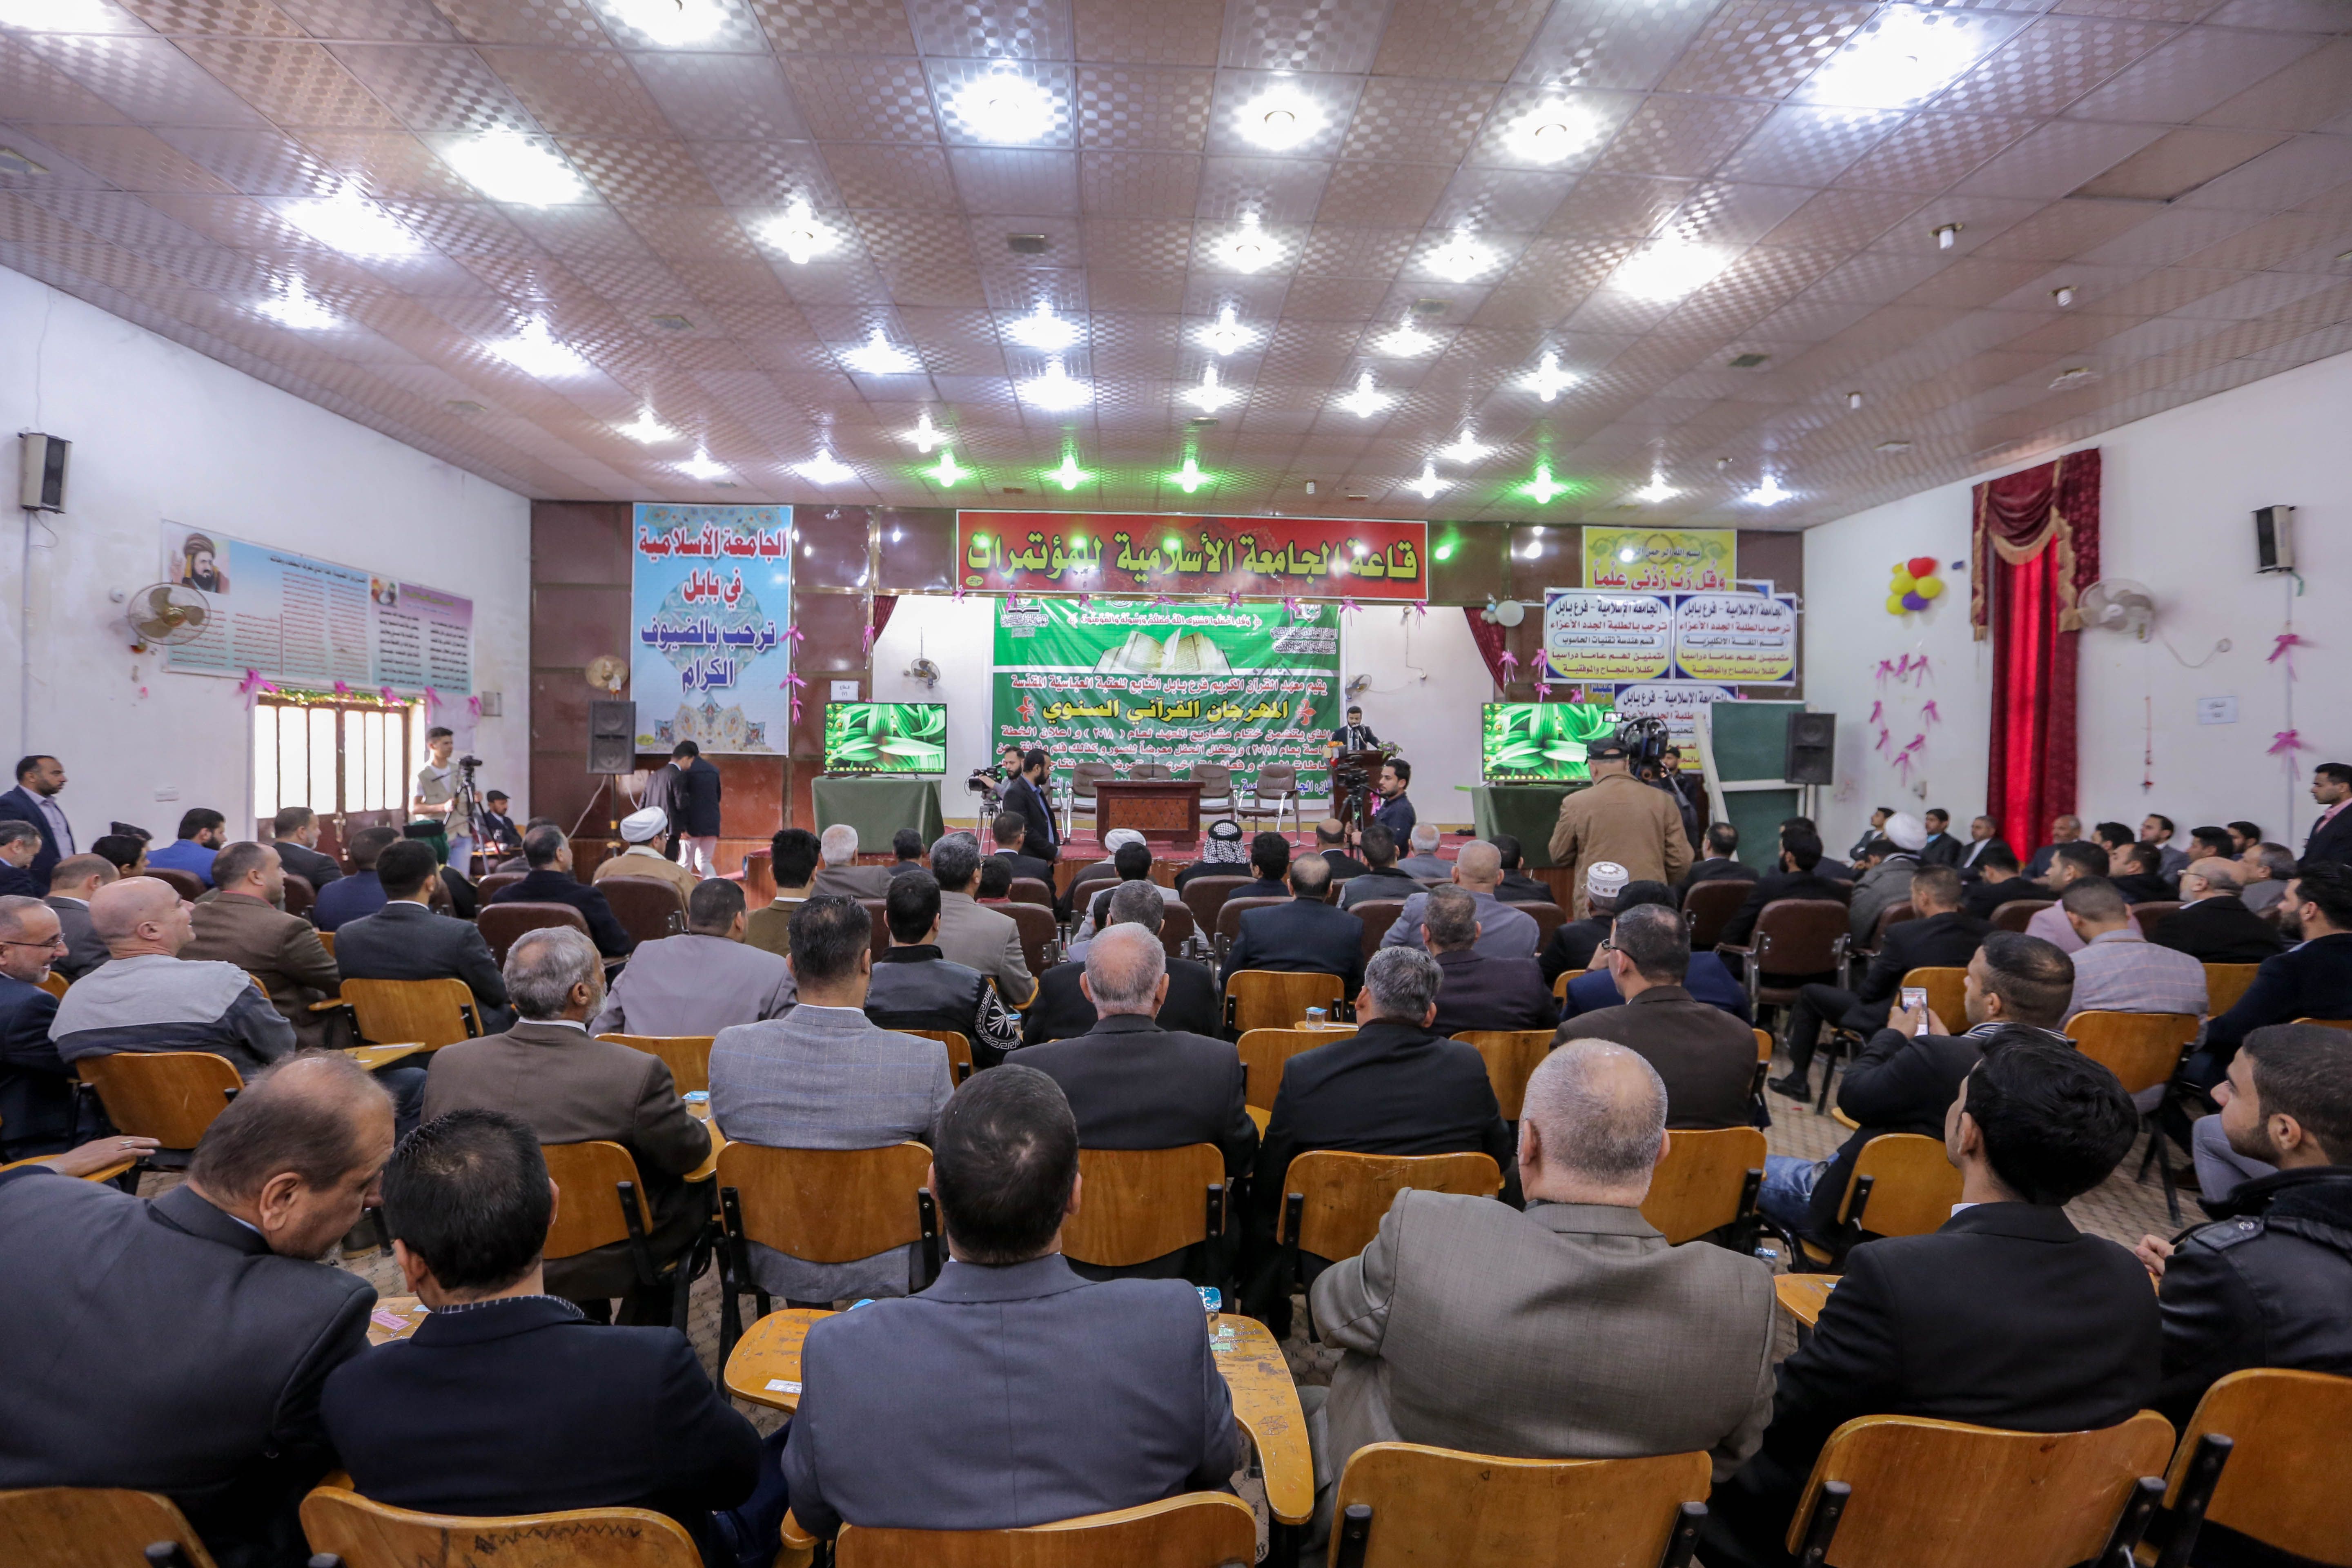 معهد القرآن الكريم فرع بابل يقيم مهرجان ختام مشاريعه القرآنية لعام 2018